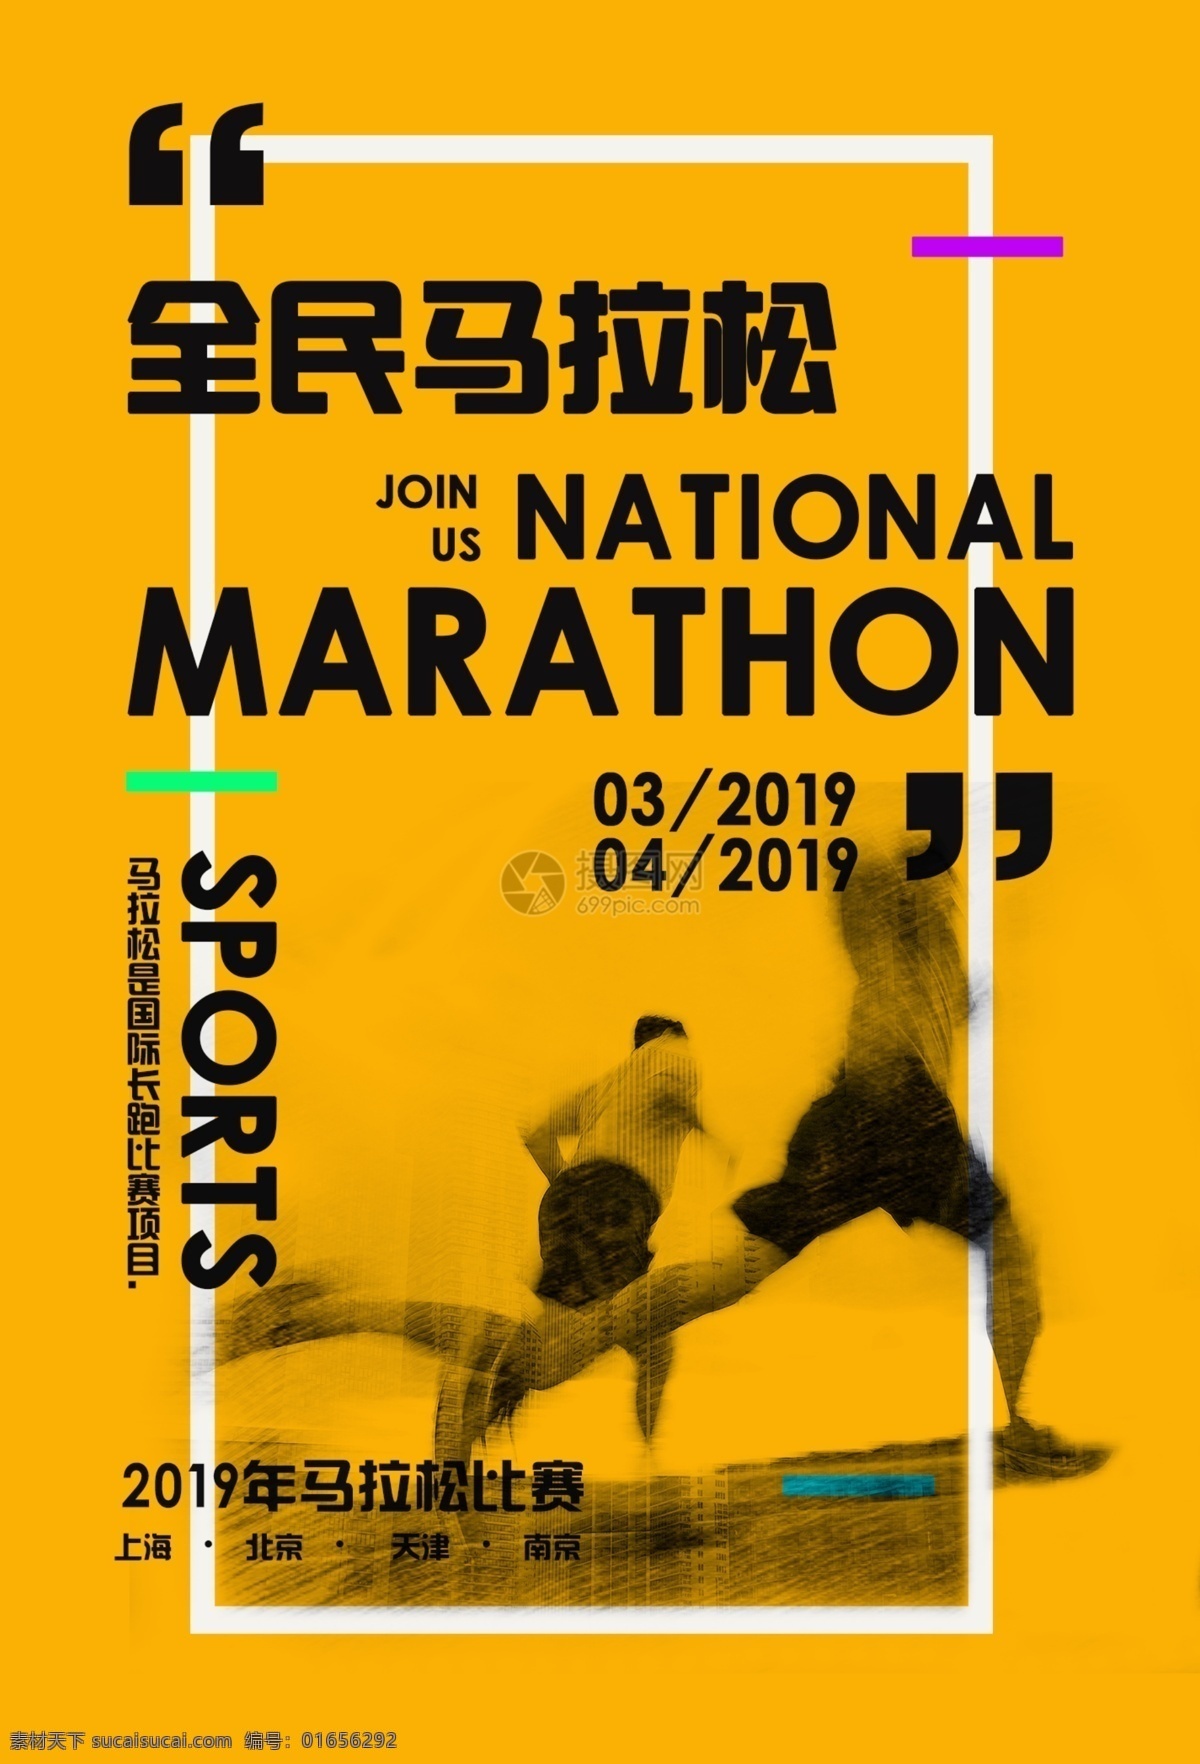 全民 马拉松 比赛 招募 海报 运动 马拉松比赛 跑步